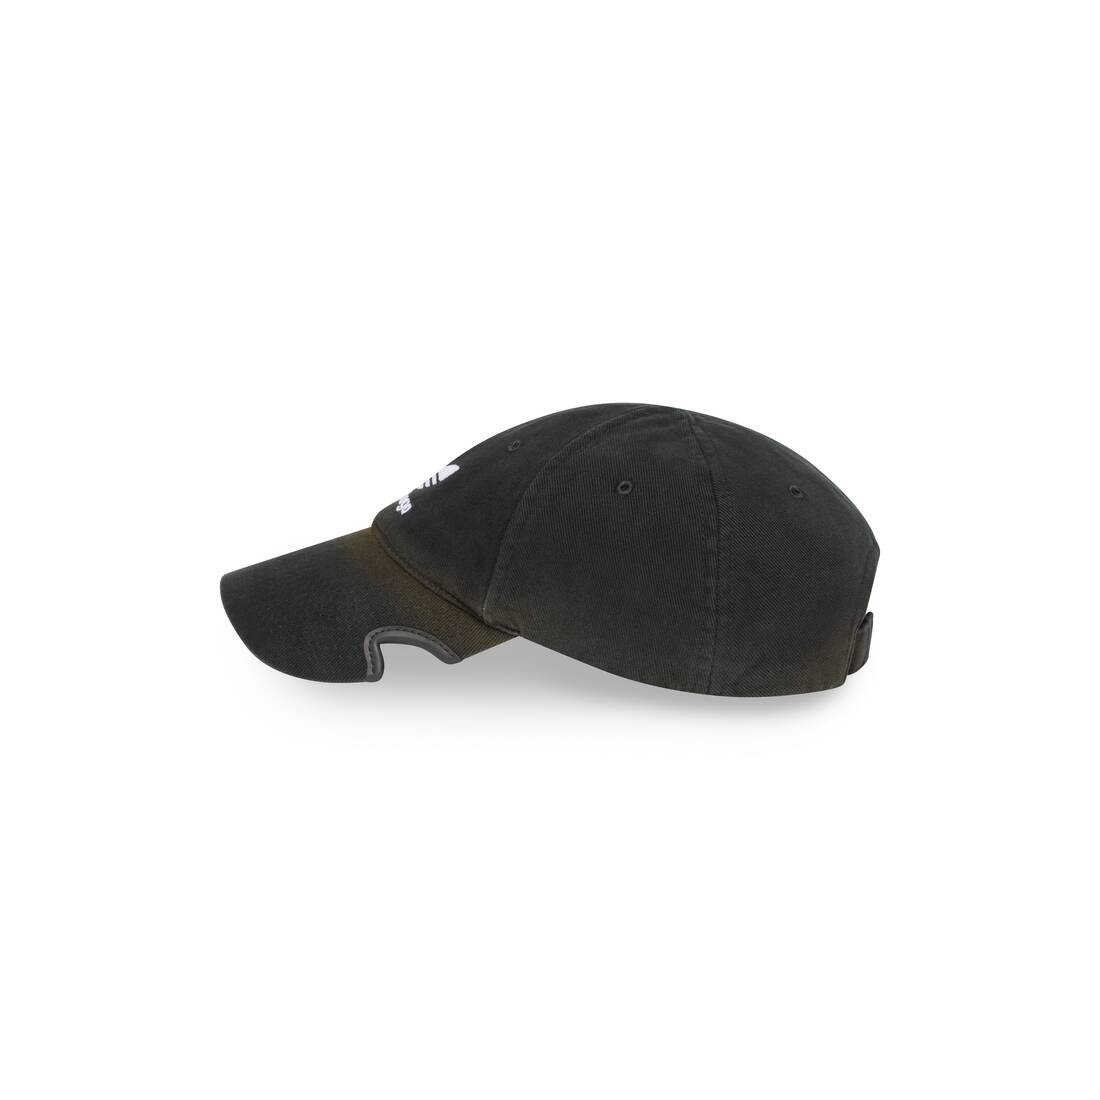 Balenciaga / Adidas Cap in Black